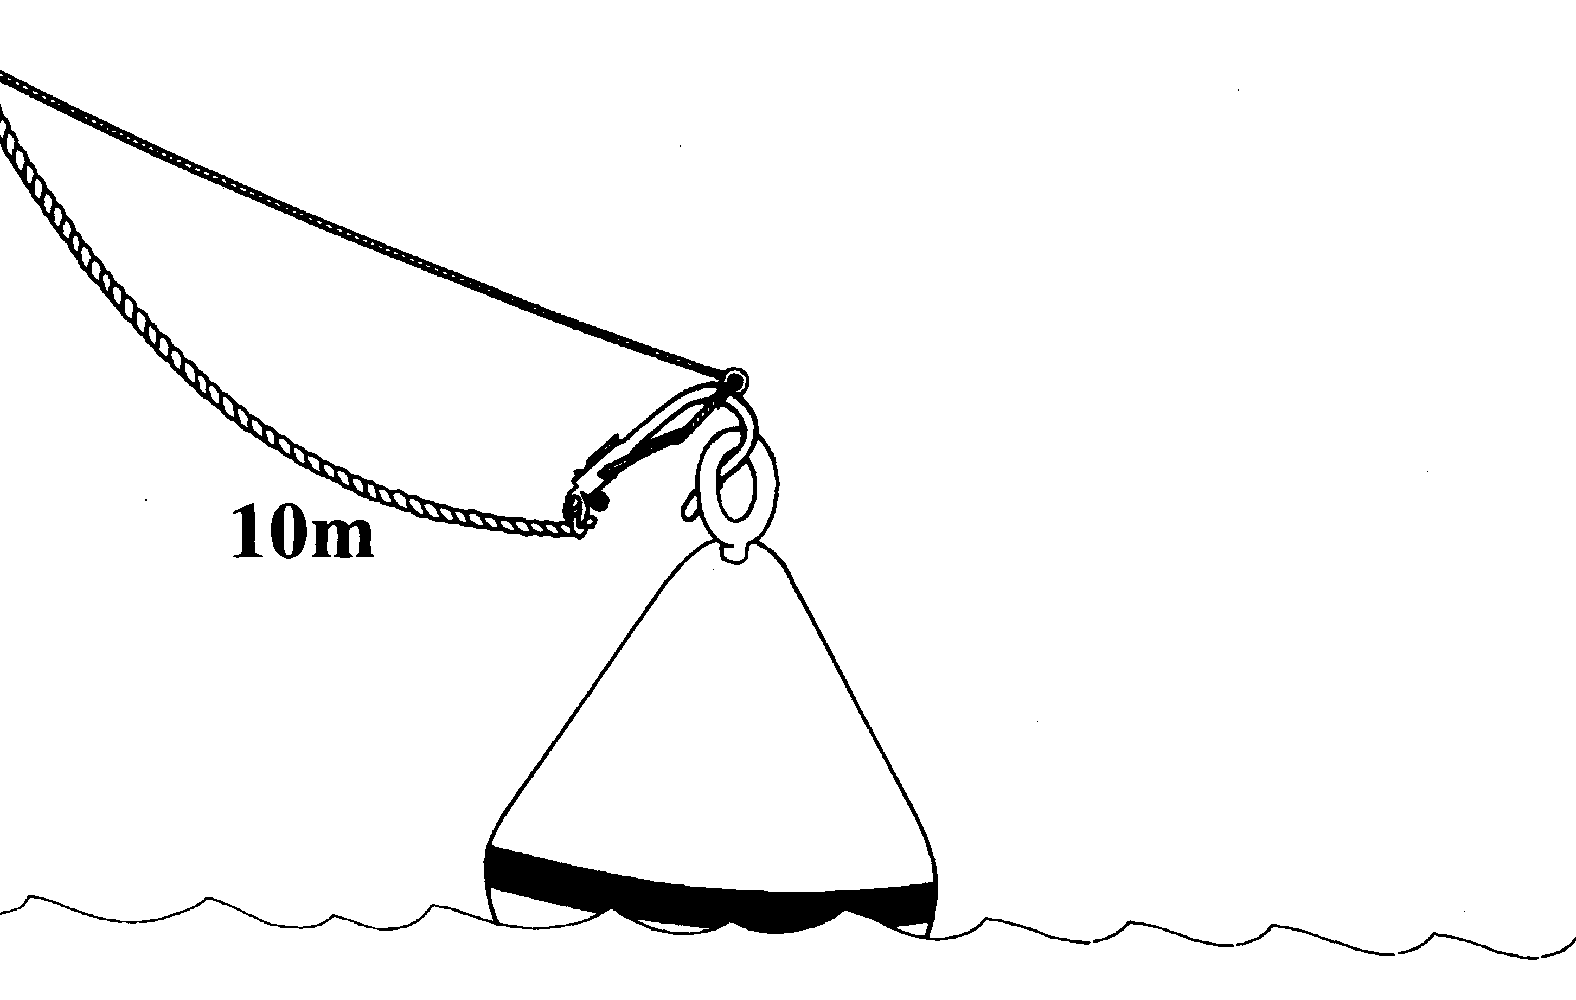 Mooring Buoy & Retrieving Hook